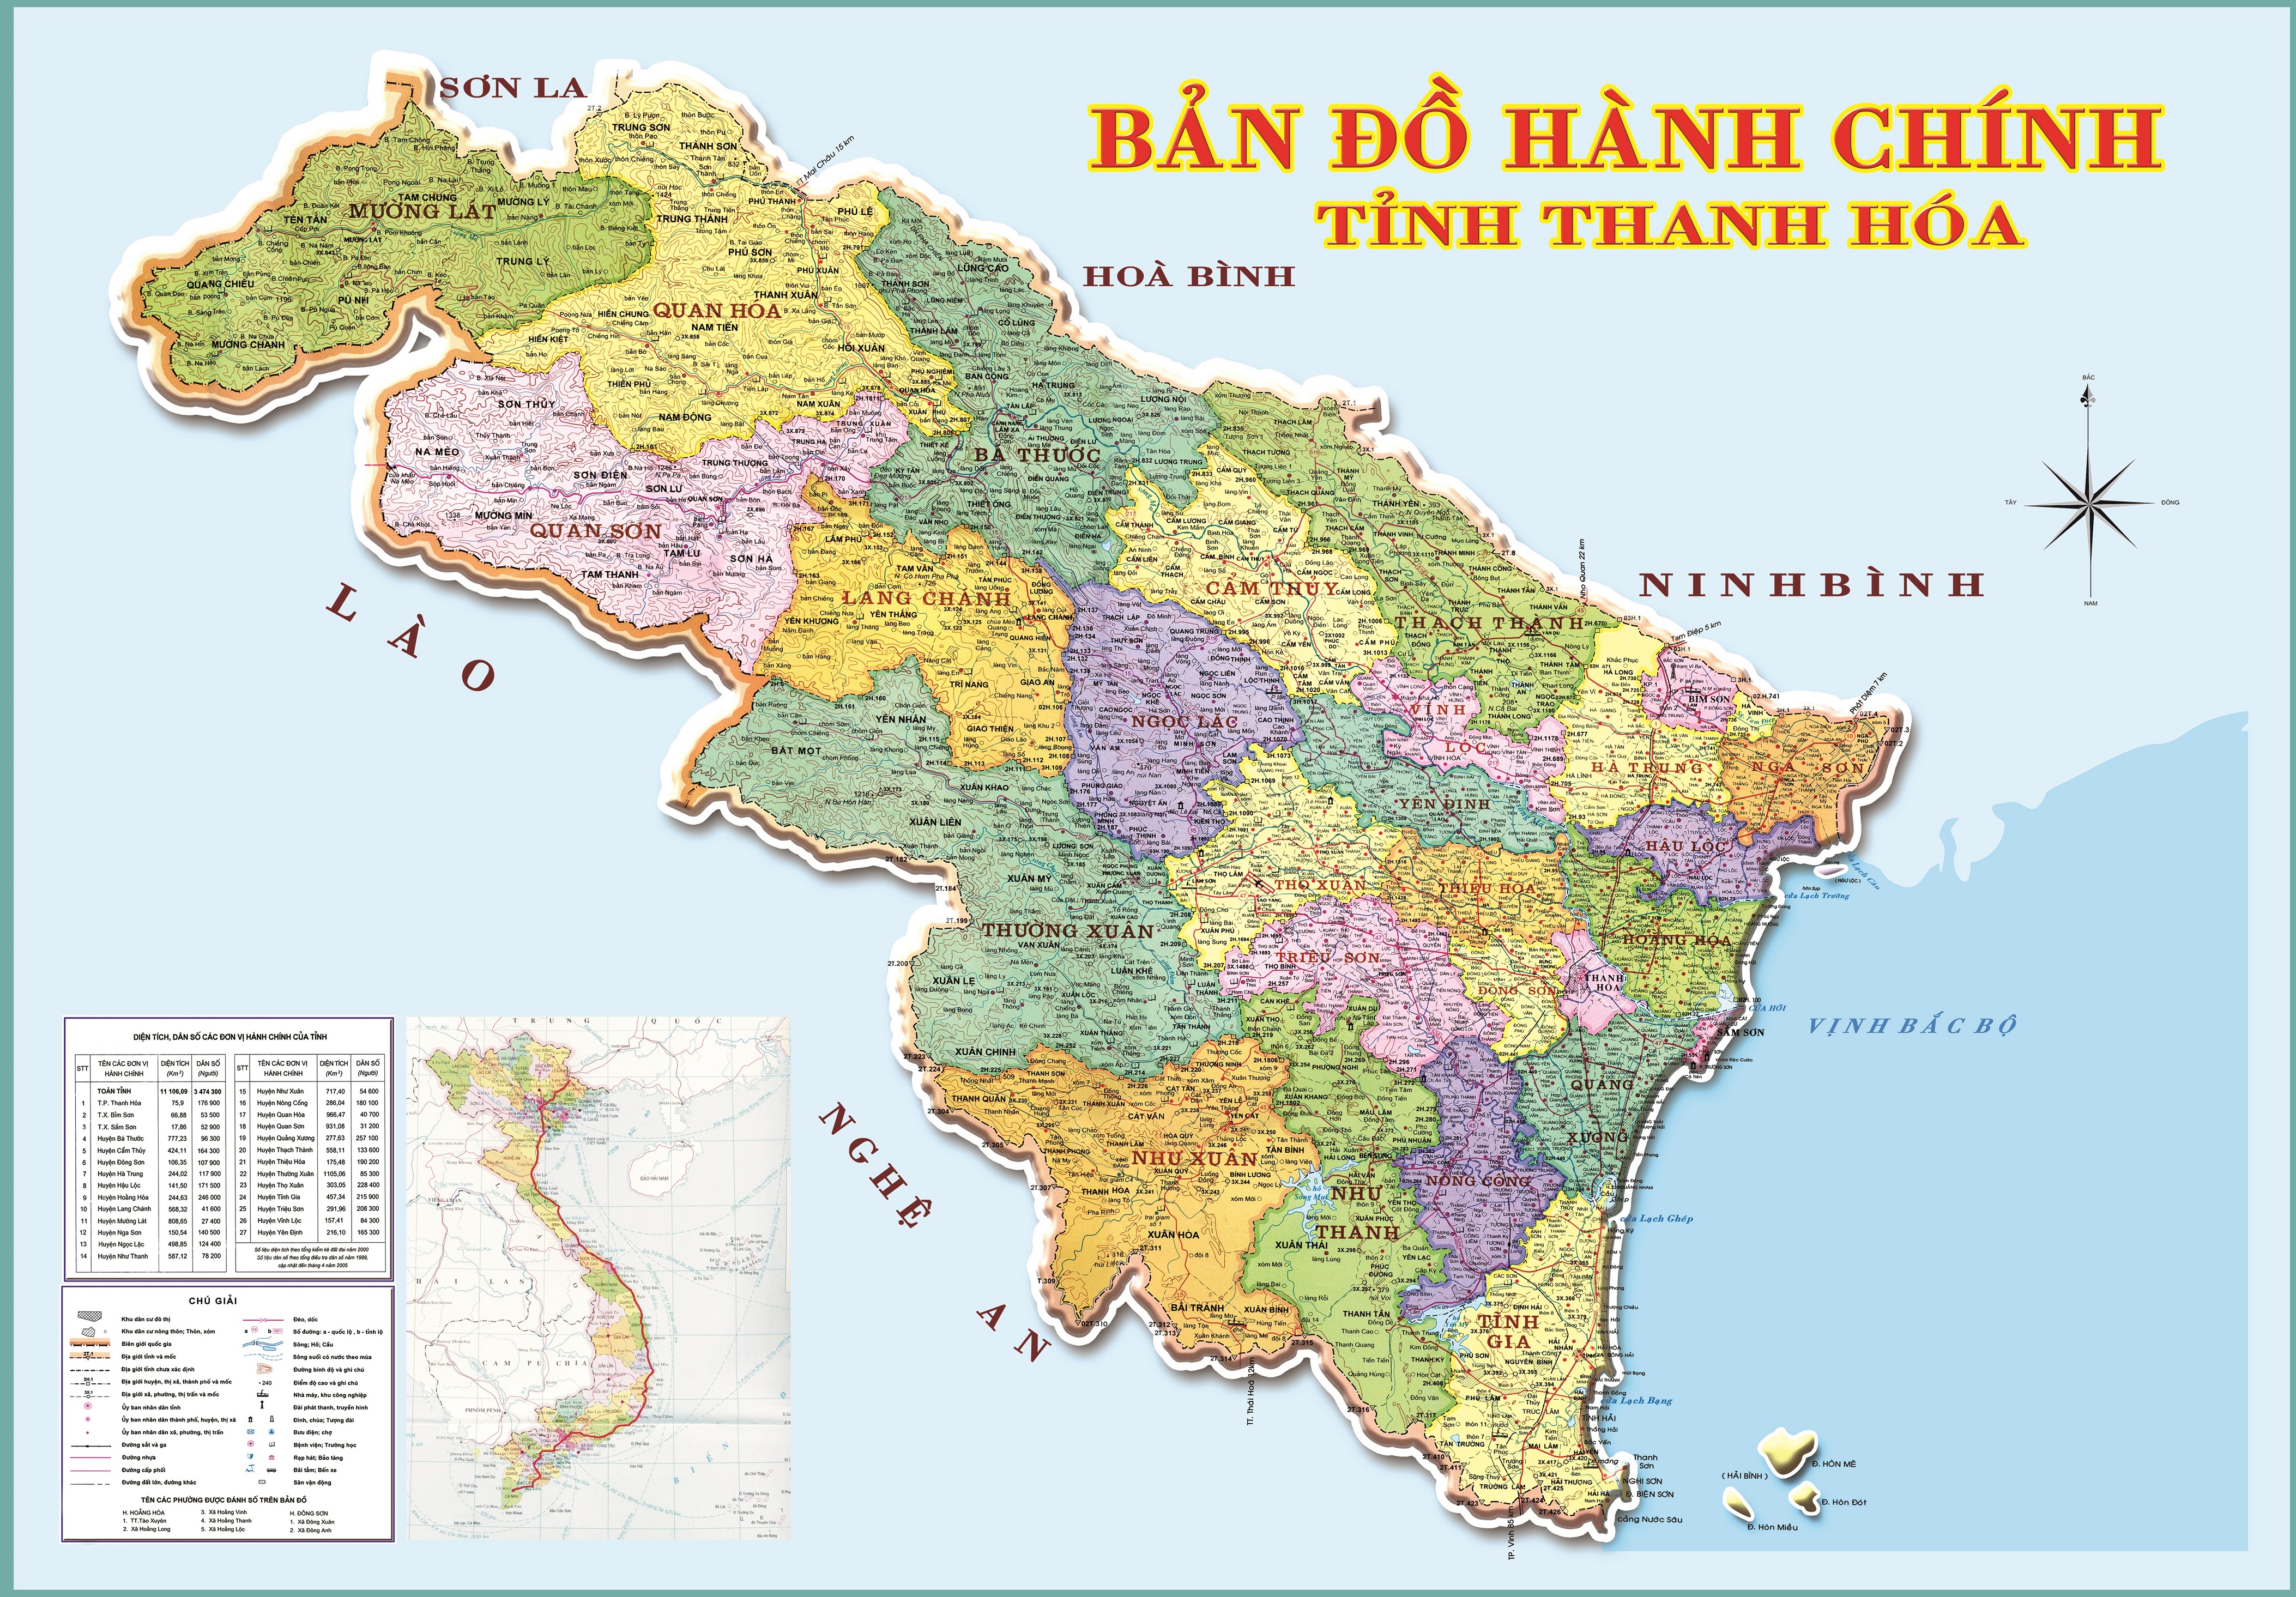 Bản đồ hành chính tỉnh Thanh Hoá sẽ giúp bạn hiểu rõ hơn về cấu trúc hành chính của tỉnh Thanh Hóa. Từ đó, bạn sẽ biết được về các quận, huyện, thị xã thuộc tỉnh Thanh Hóa, giúp cho việc đi lại và tìm kiếm thông tin dễ dàng hơn bao giờ hết.